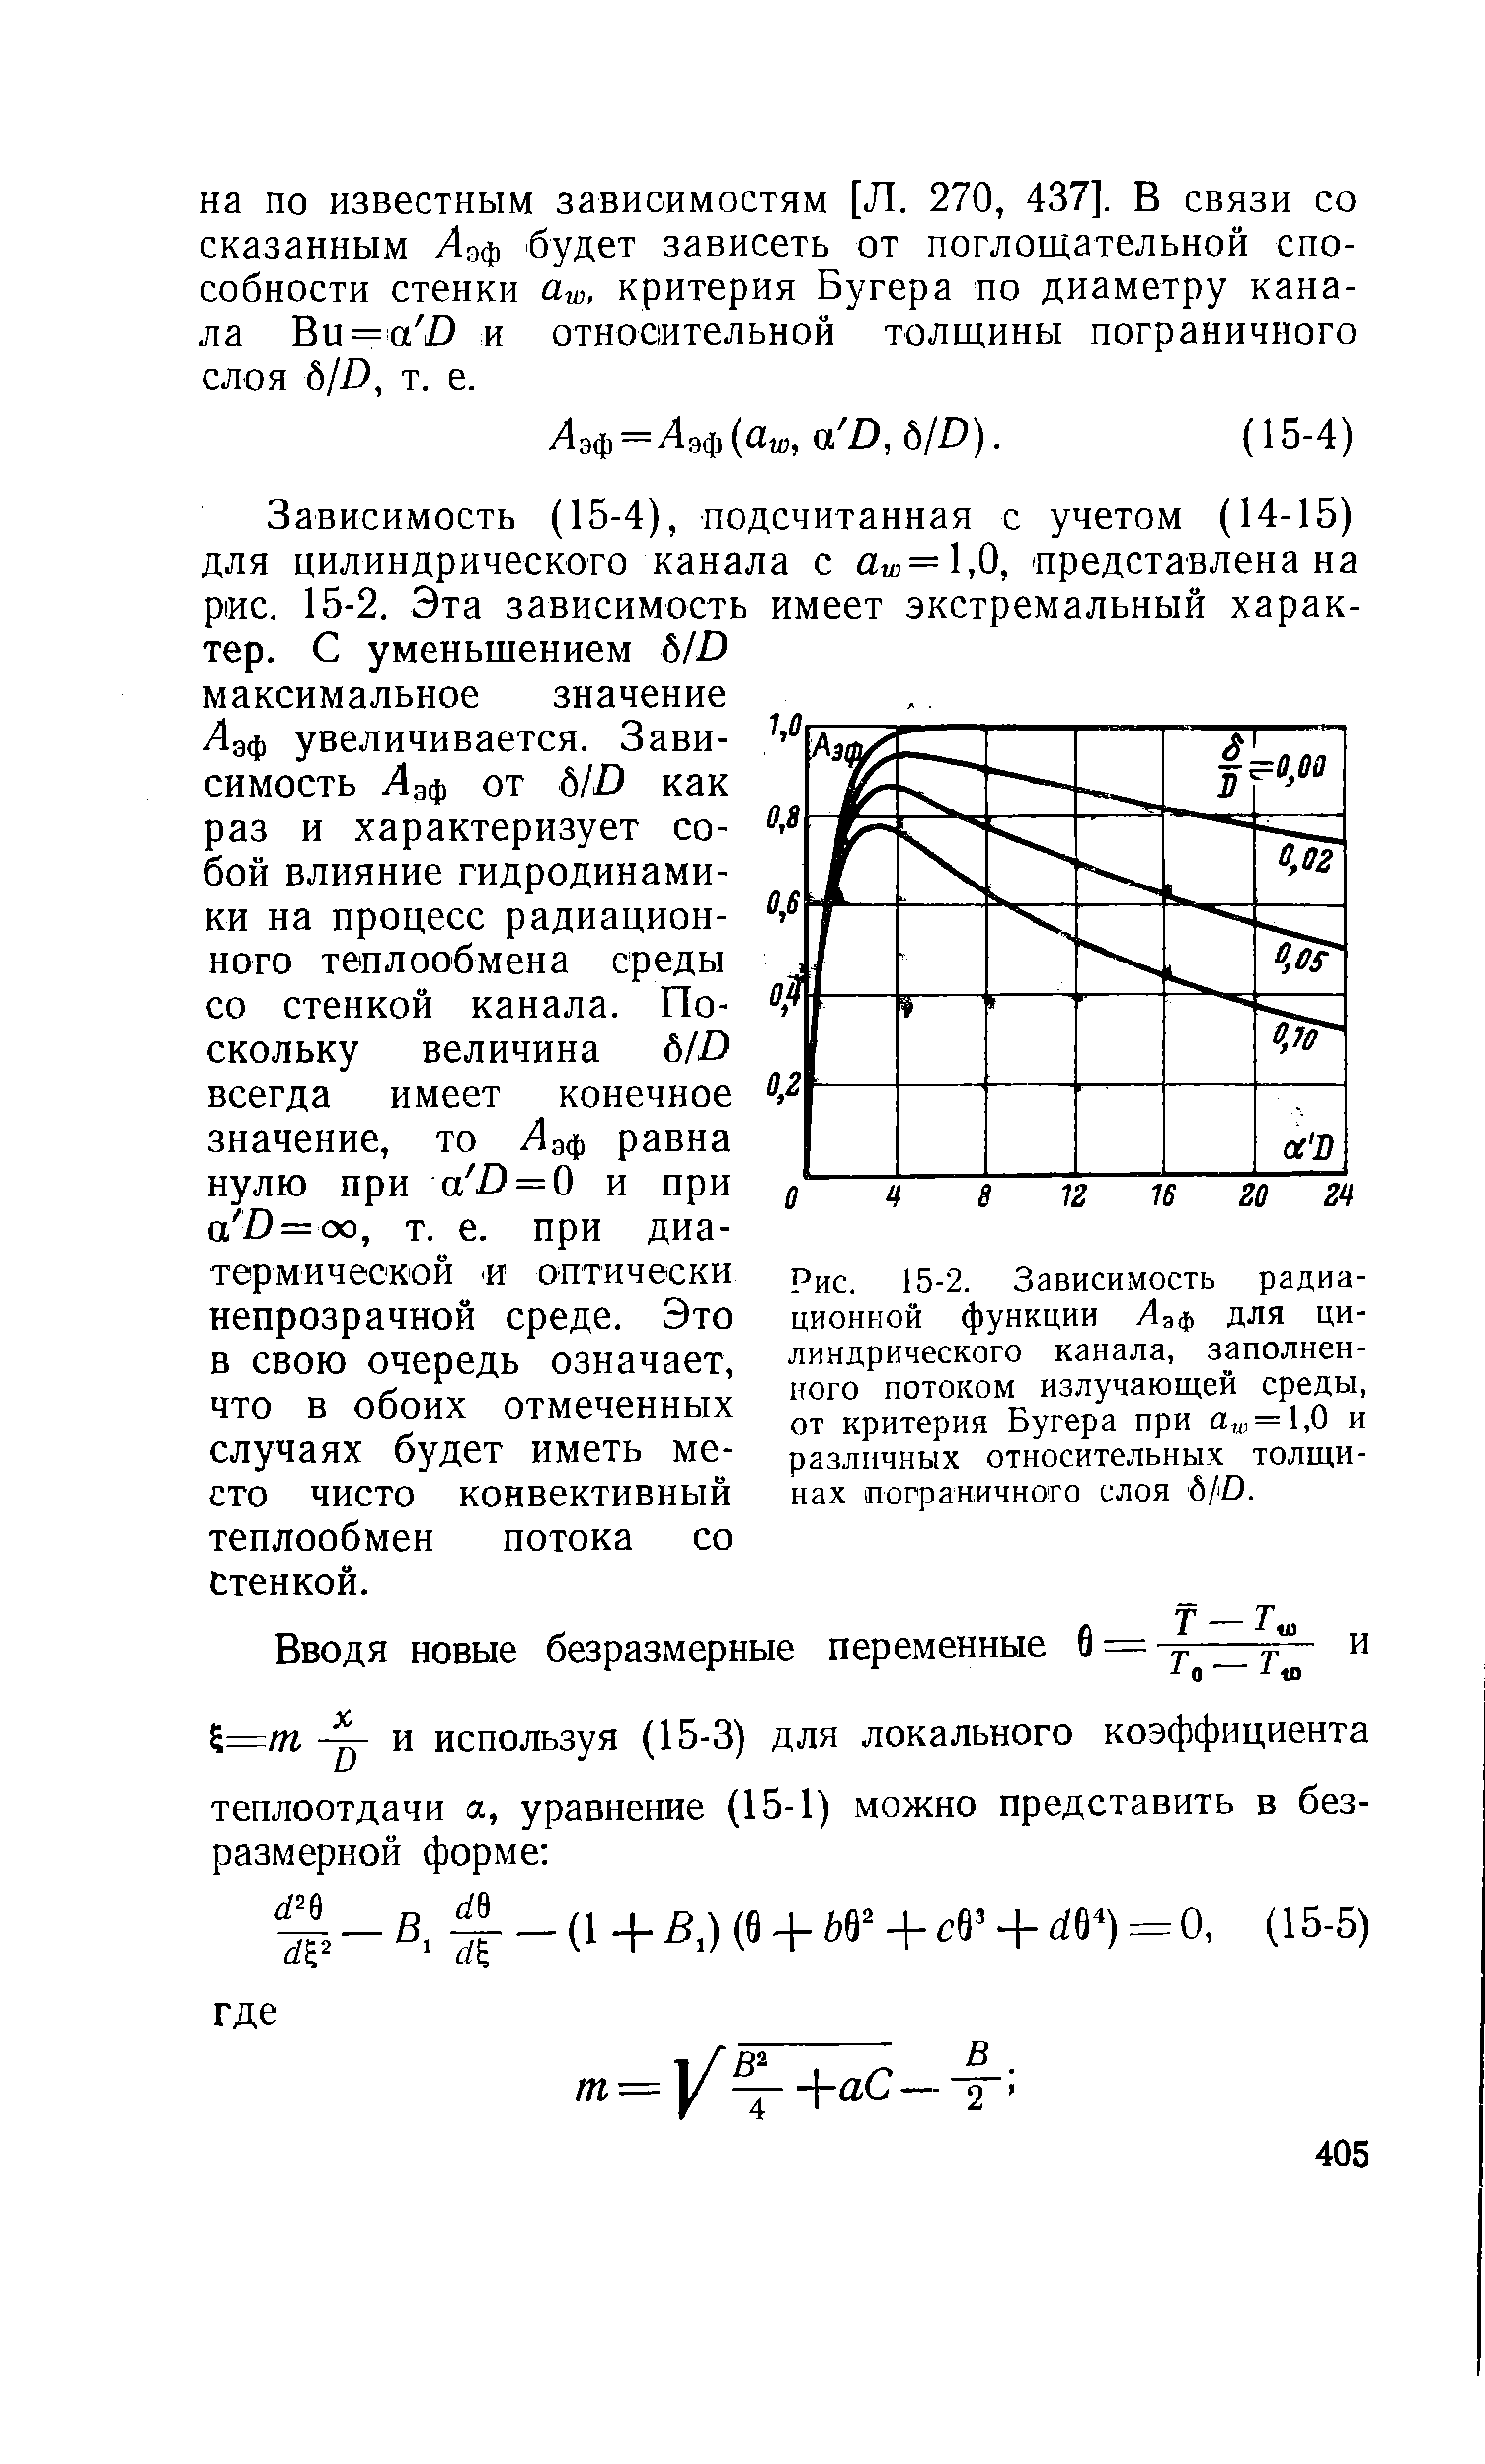 Рис. 15-2. Зависимость радиационной функции Лаф для цилиндрического канала, заполненного потоком излучающей среды, от критерия Бугера при а, ,= 1,0 и различных относительных толщинах пограничного слоя 6/D.
